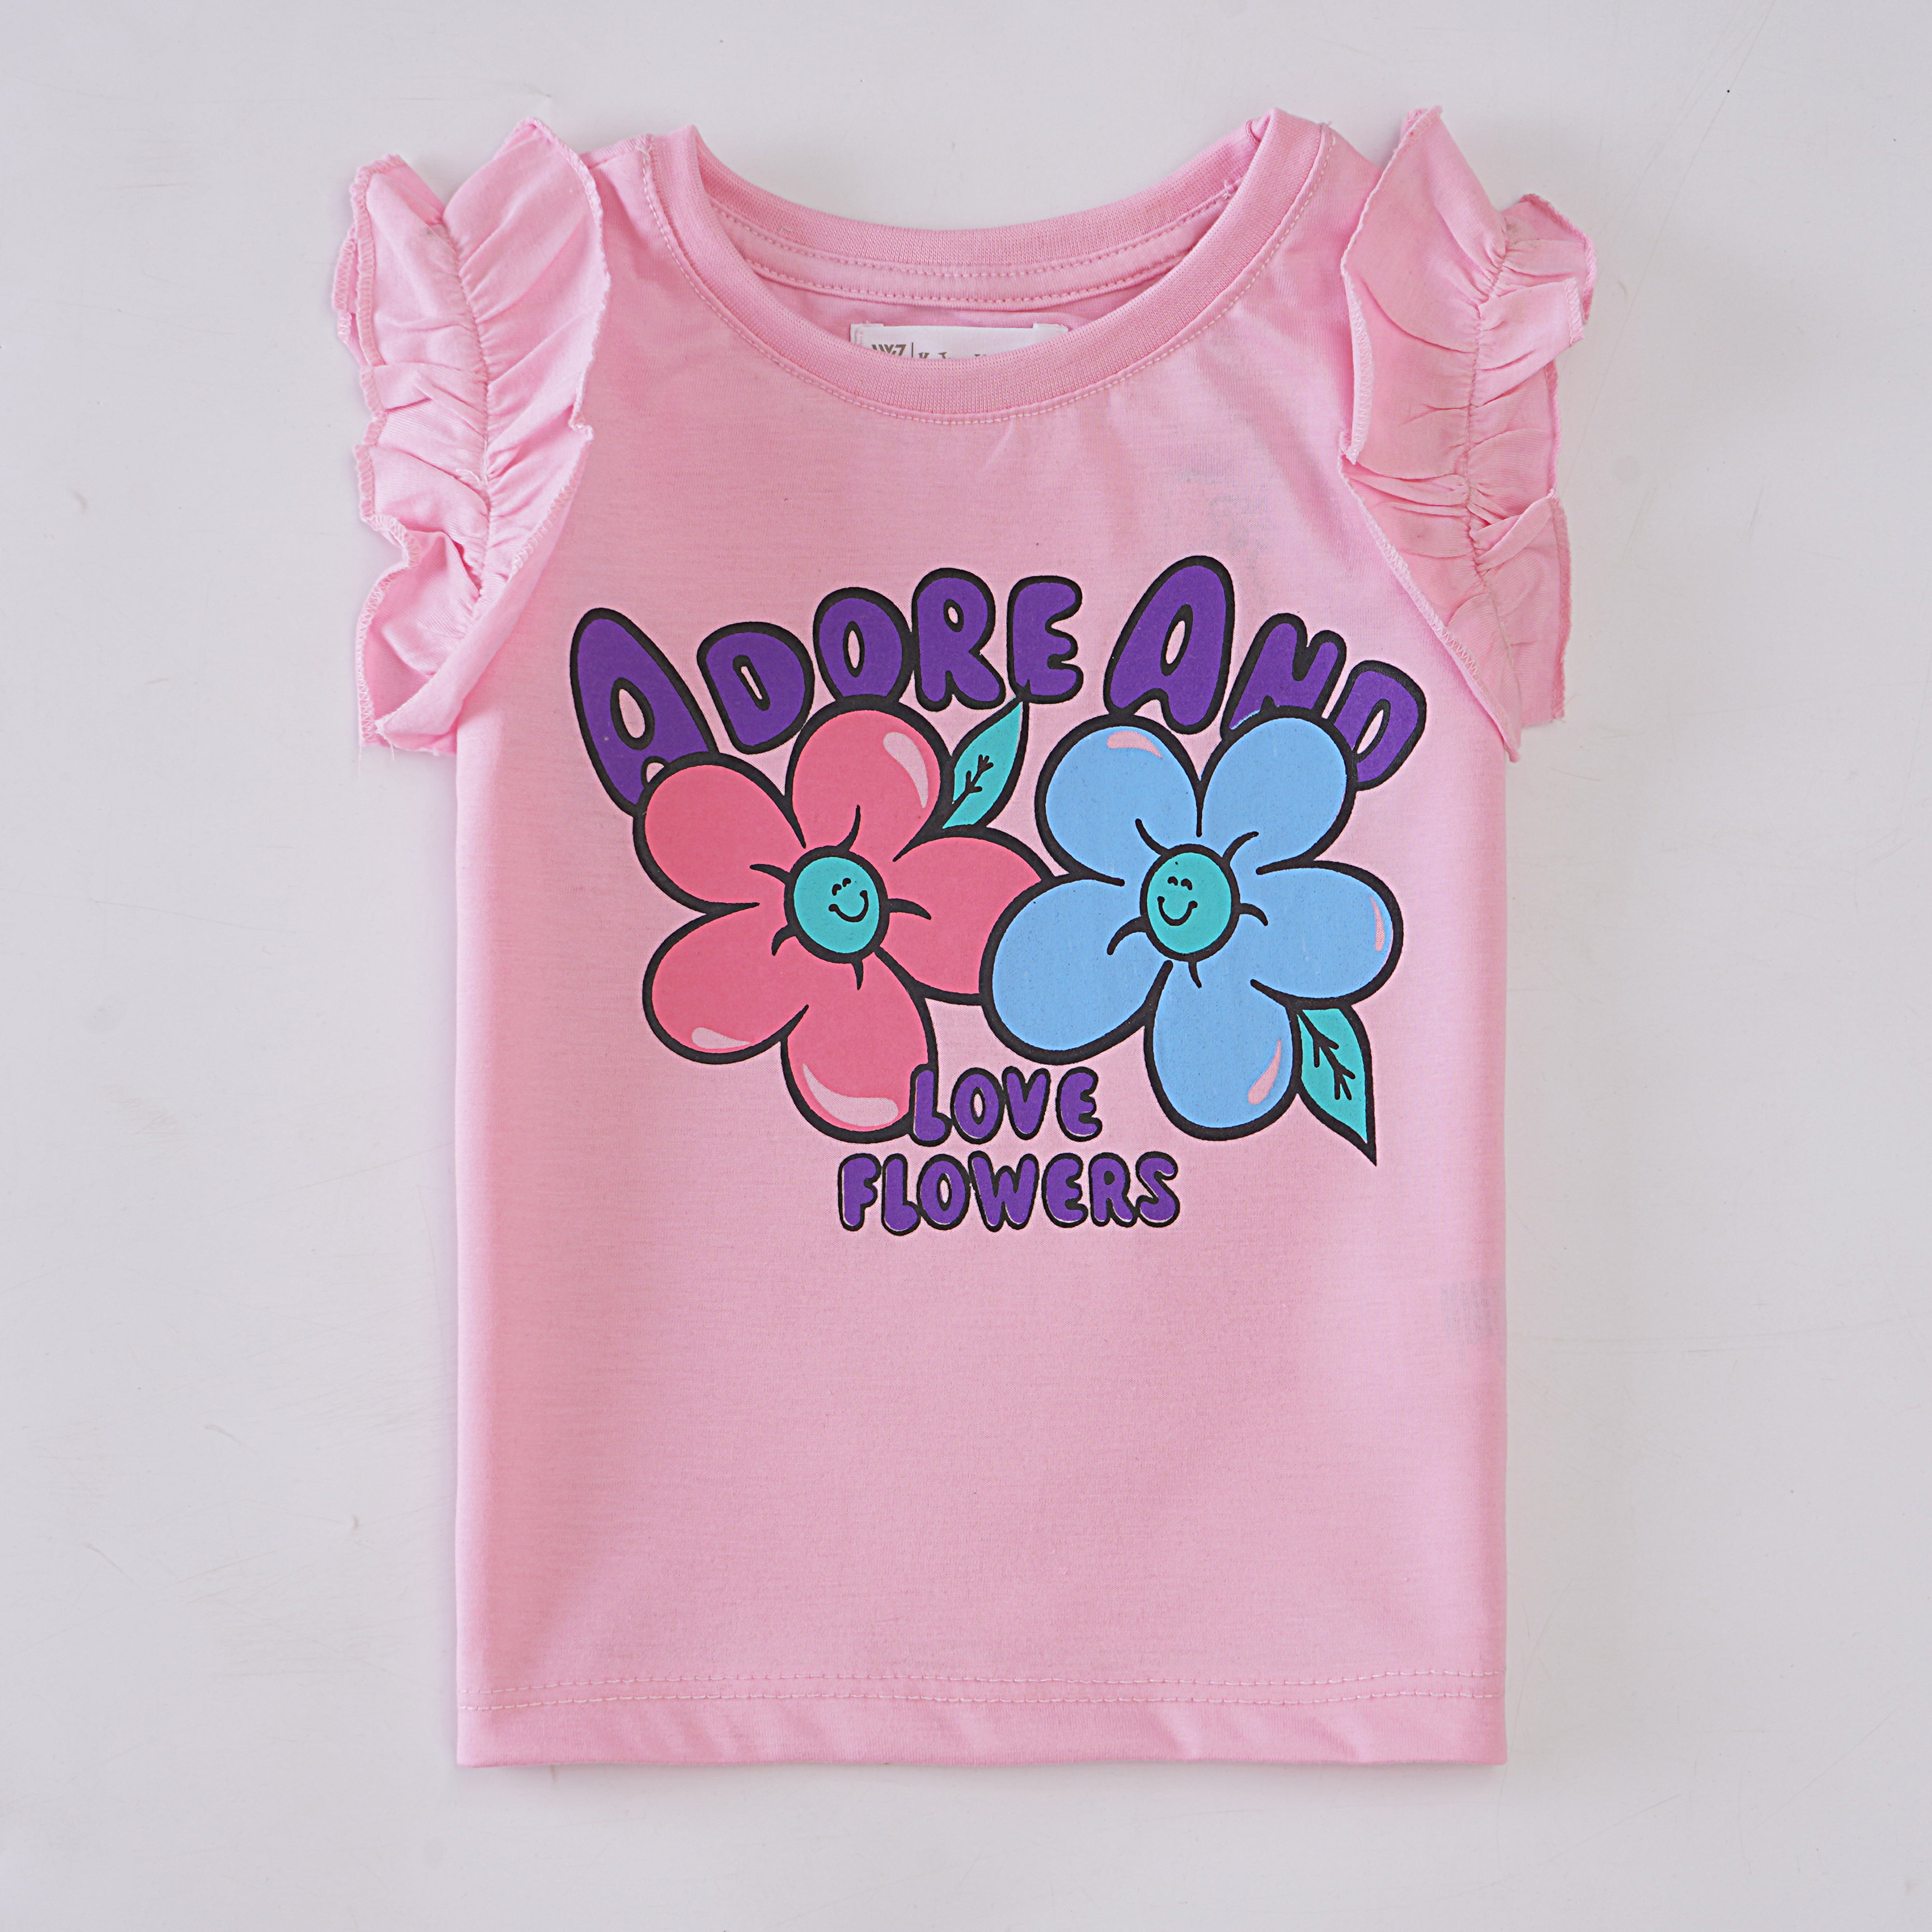 Girls H/S t shirt (Adore)